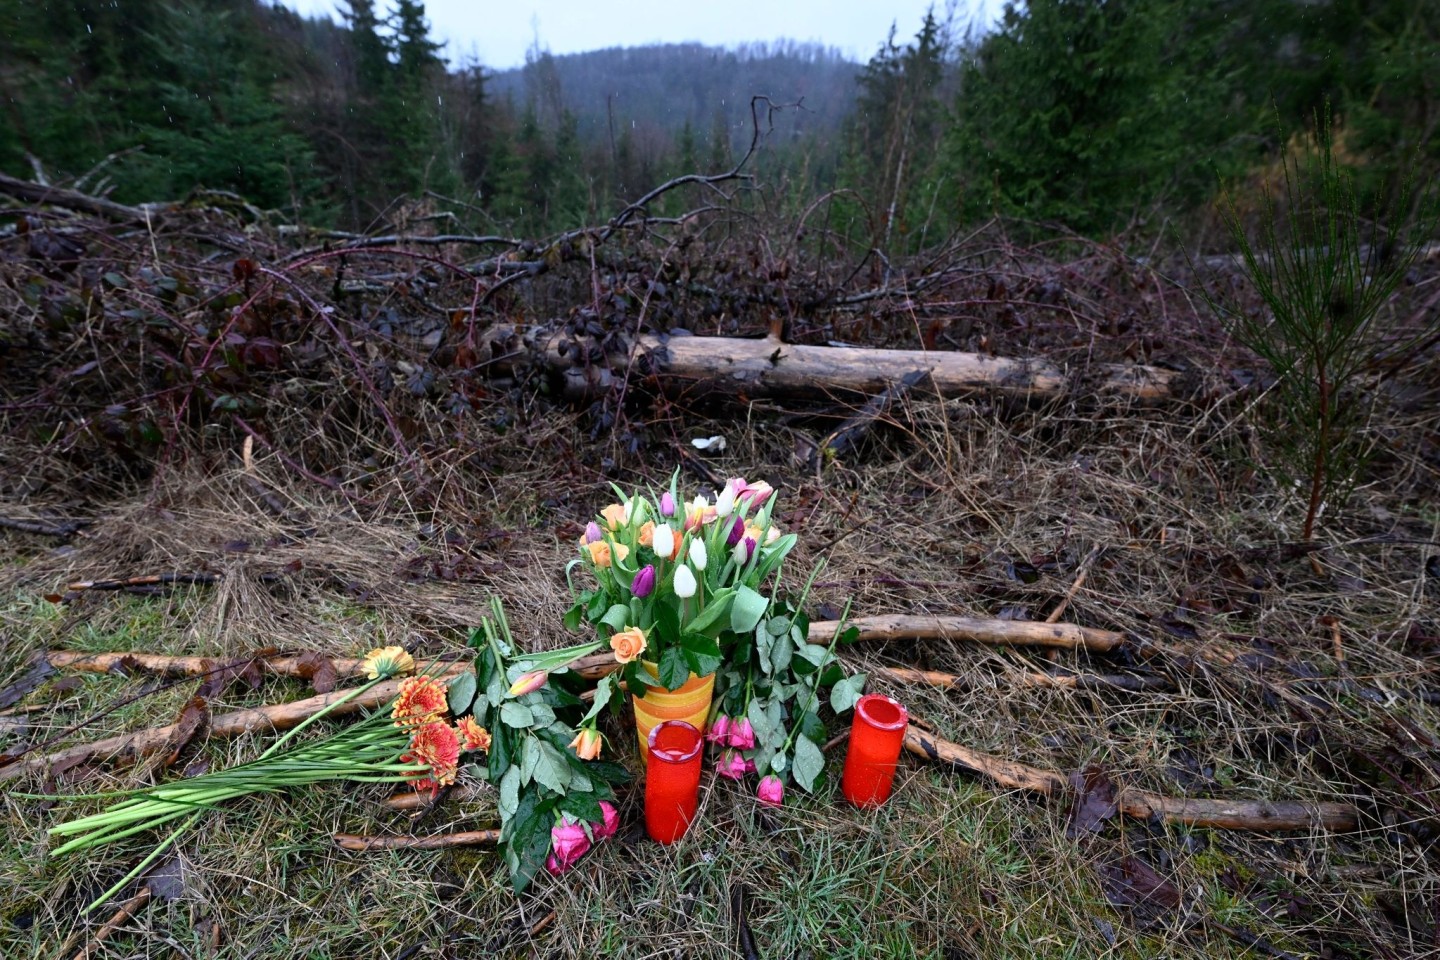 Blumen und Kerzen wurden am Fundort des getöteten Mädchens niedergelegt.